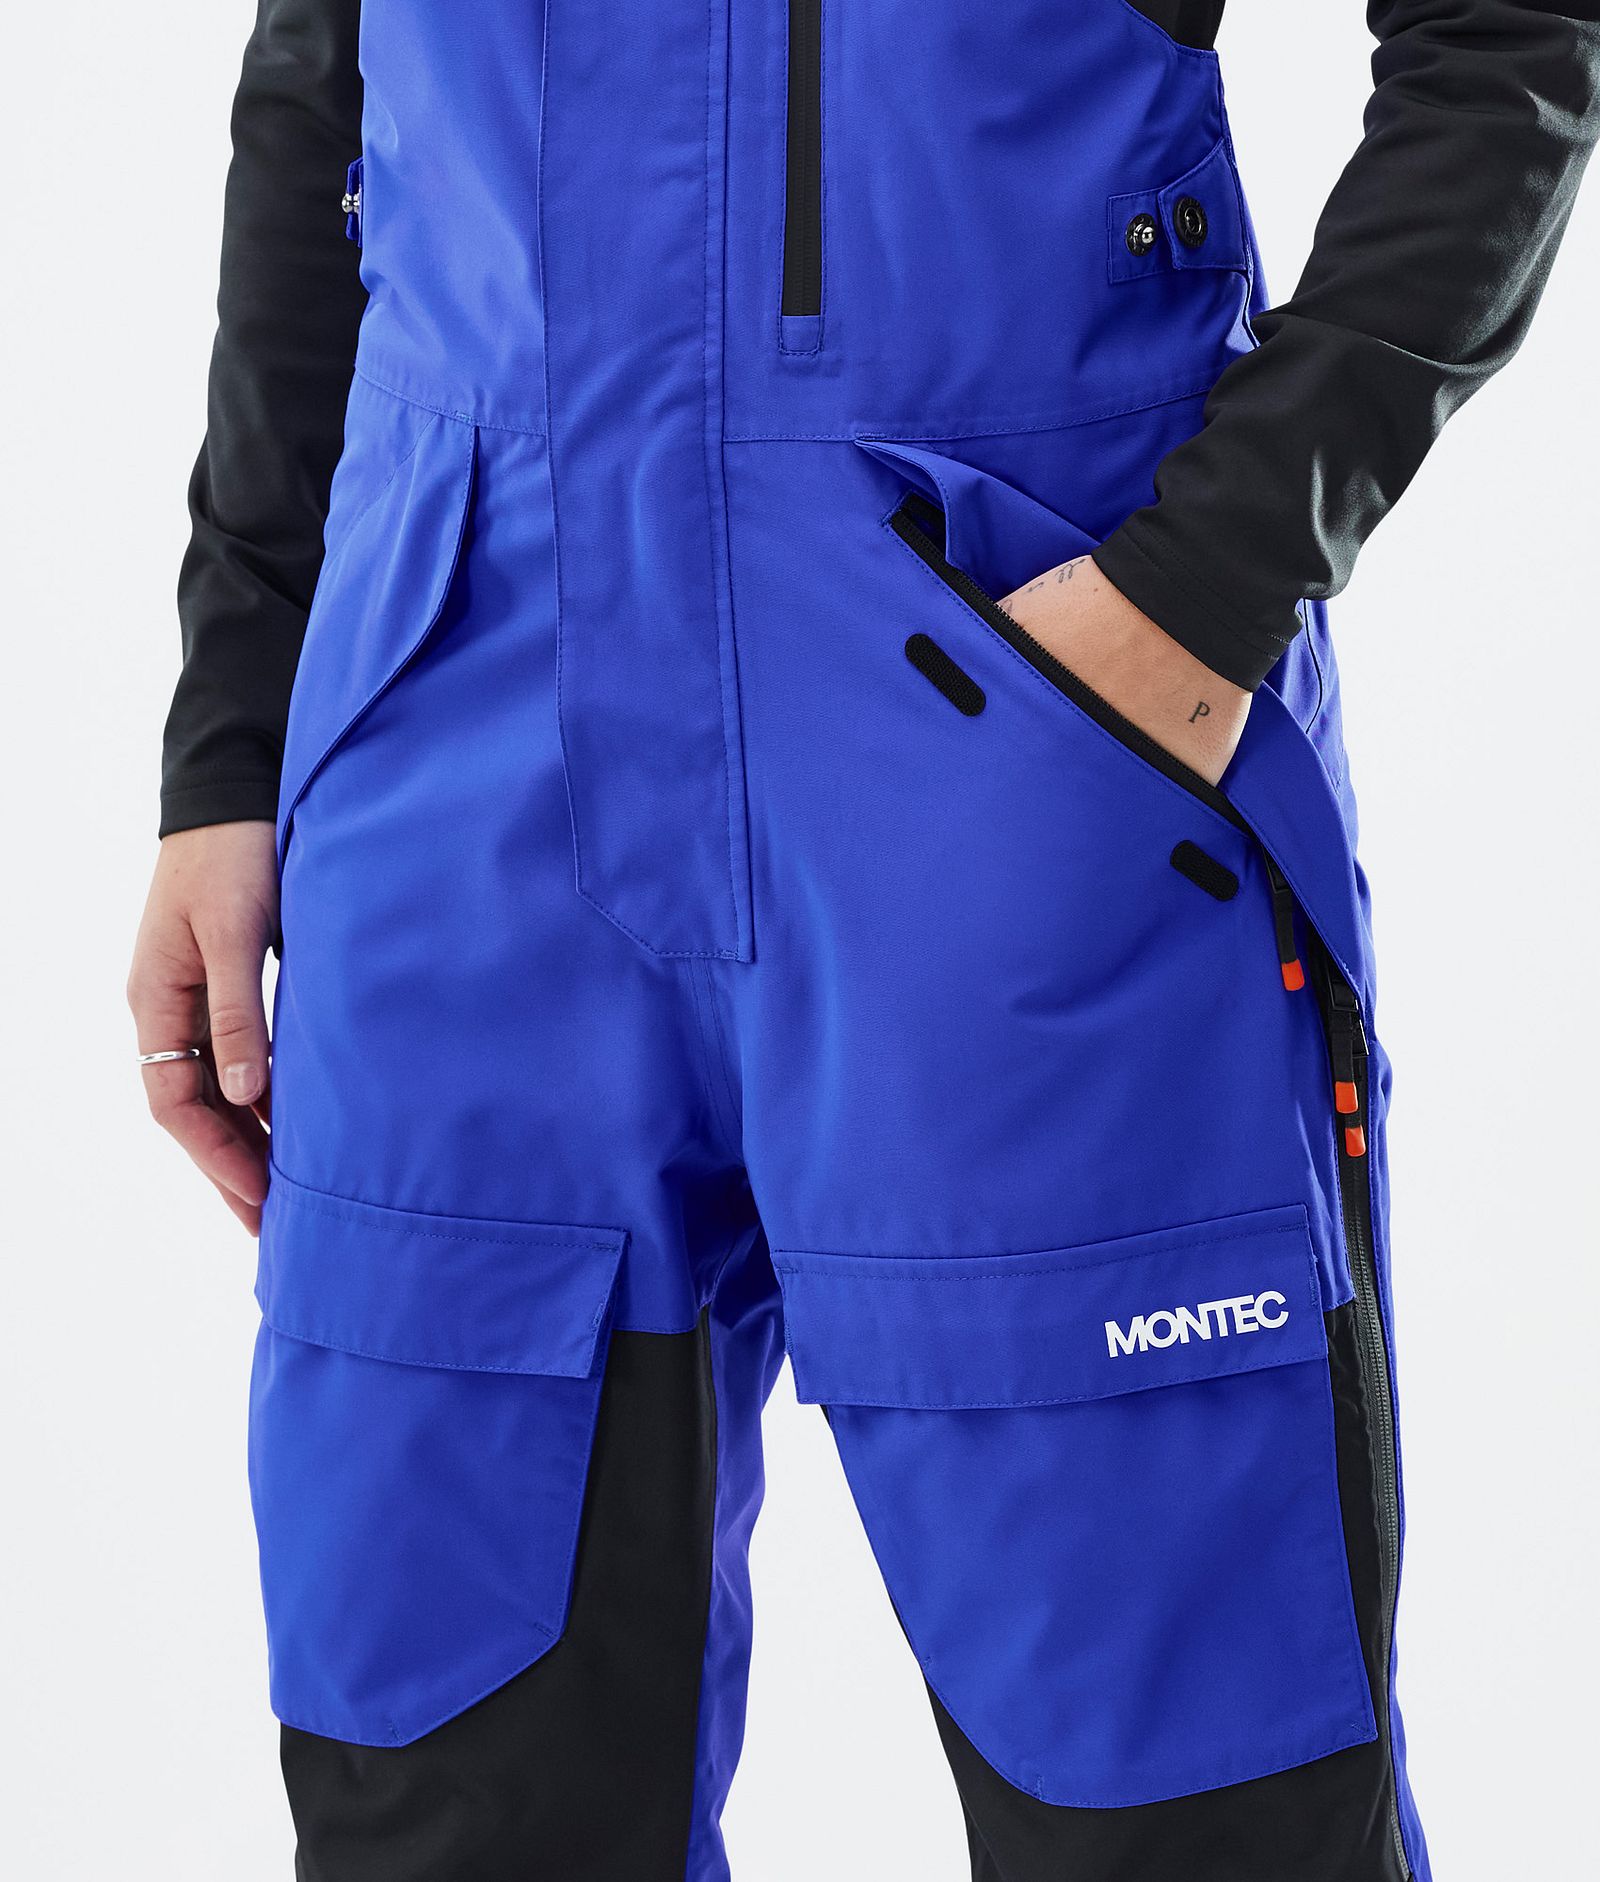 Fawk W Spodnie Snowboardowe Kobiety Cobalt Blue/Black